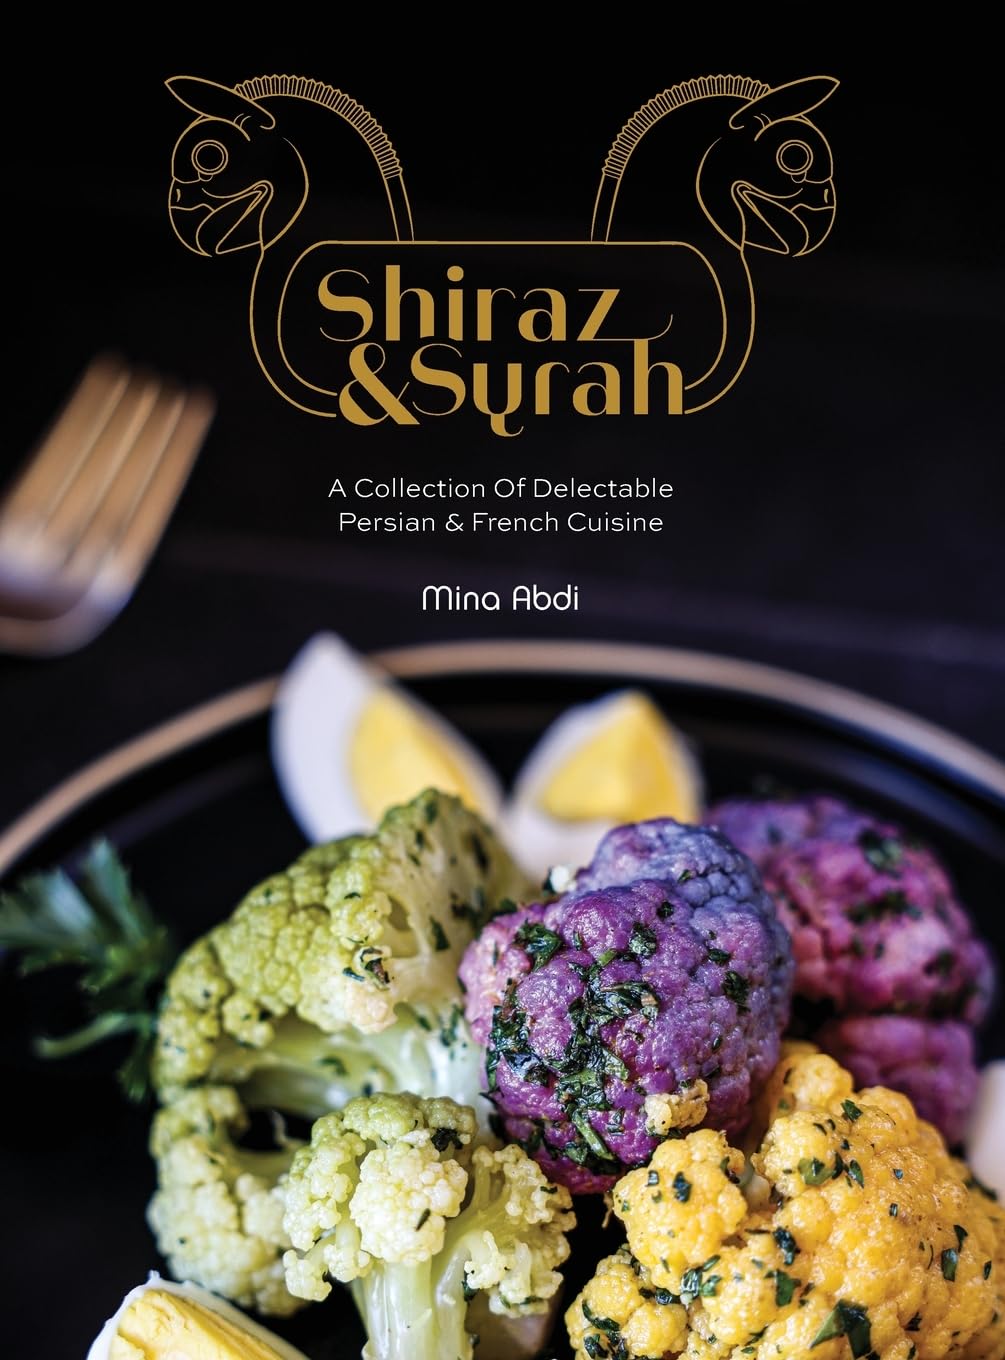 Shiraz & Syrah by Mina Abdi